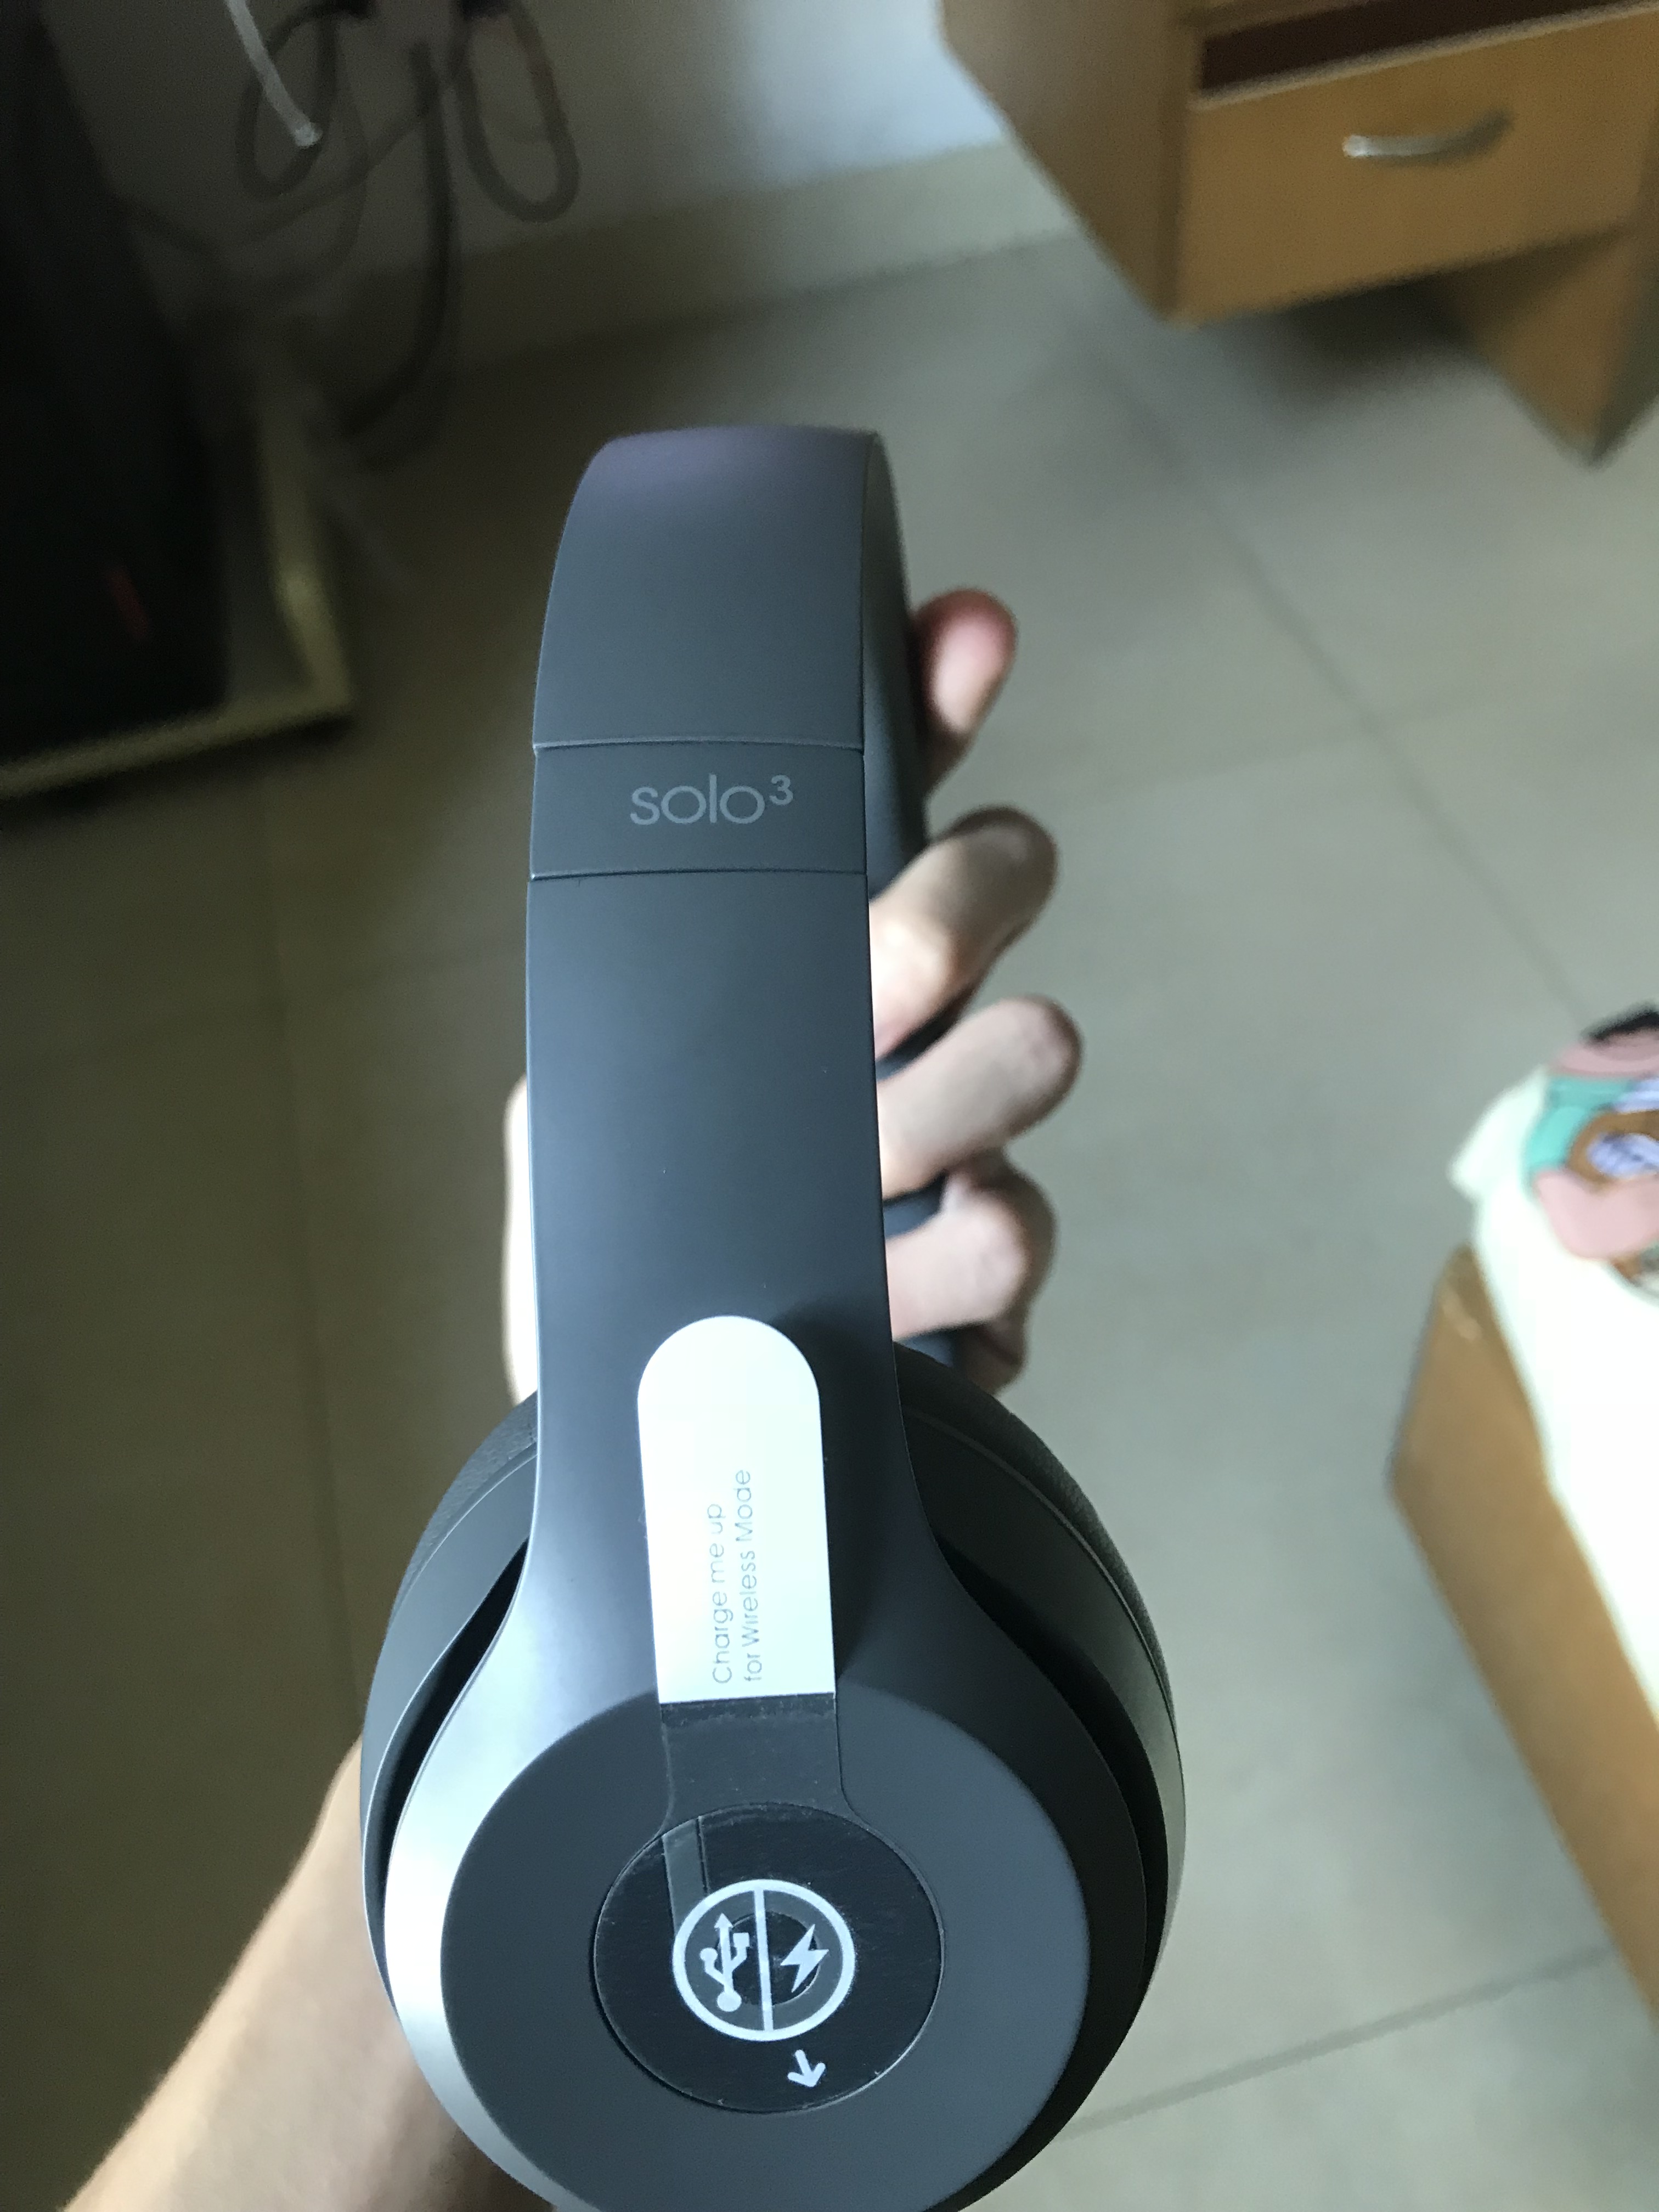 某宝入手的beats Solo3 Wireless无线蓝牙头戴式耳机行货包装很奇怪 真假辨别 正品